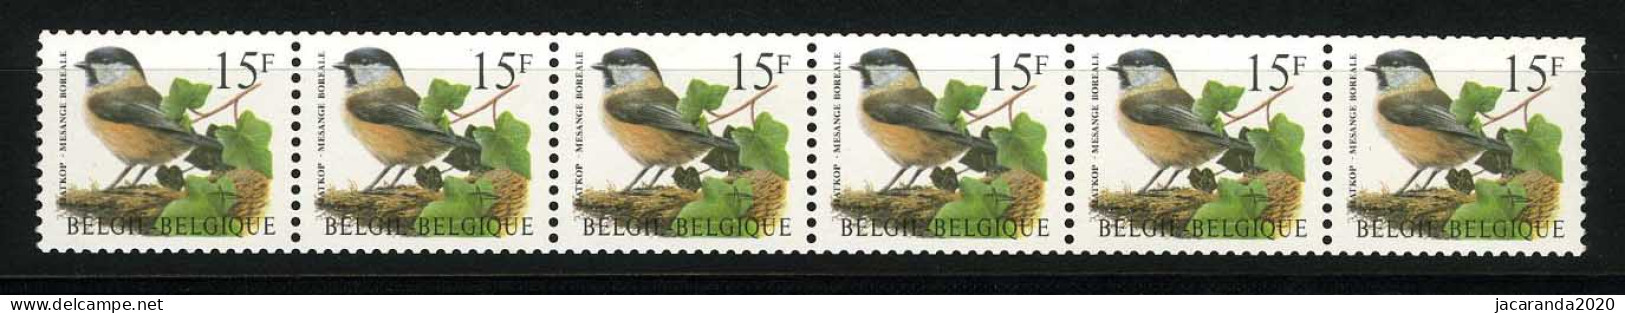 België R81a - Vogels - Oiseaux - Buzin (2732) - Strook Van 6 ZONDER NUMMER - SANS NUMERO - ZELDZAAM - RARE - Franqueo